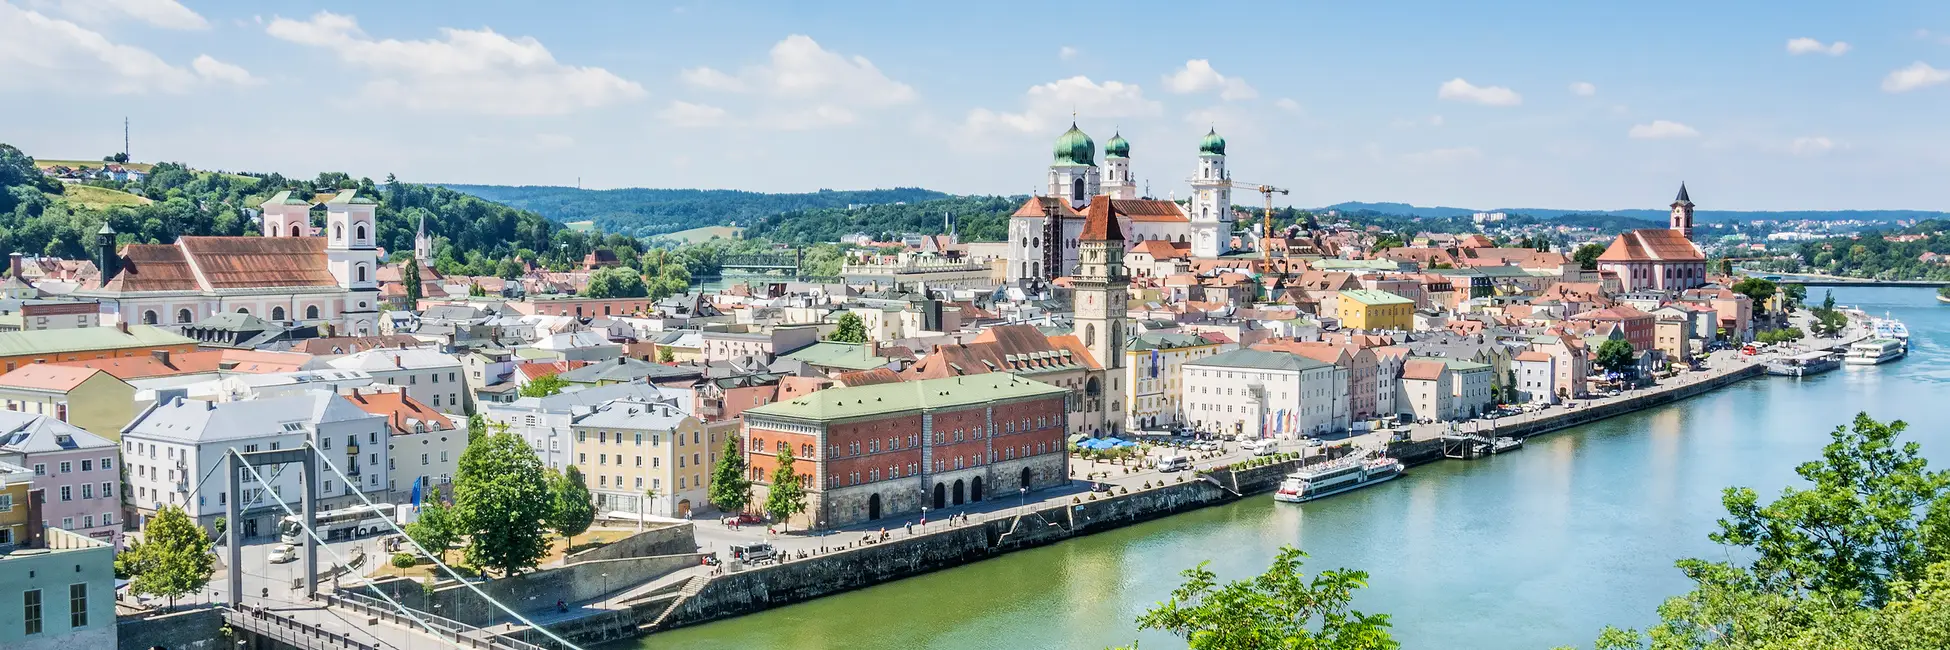 La ville de Passau en bavière 